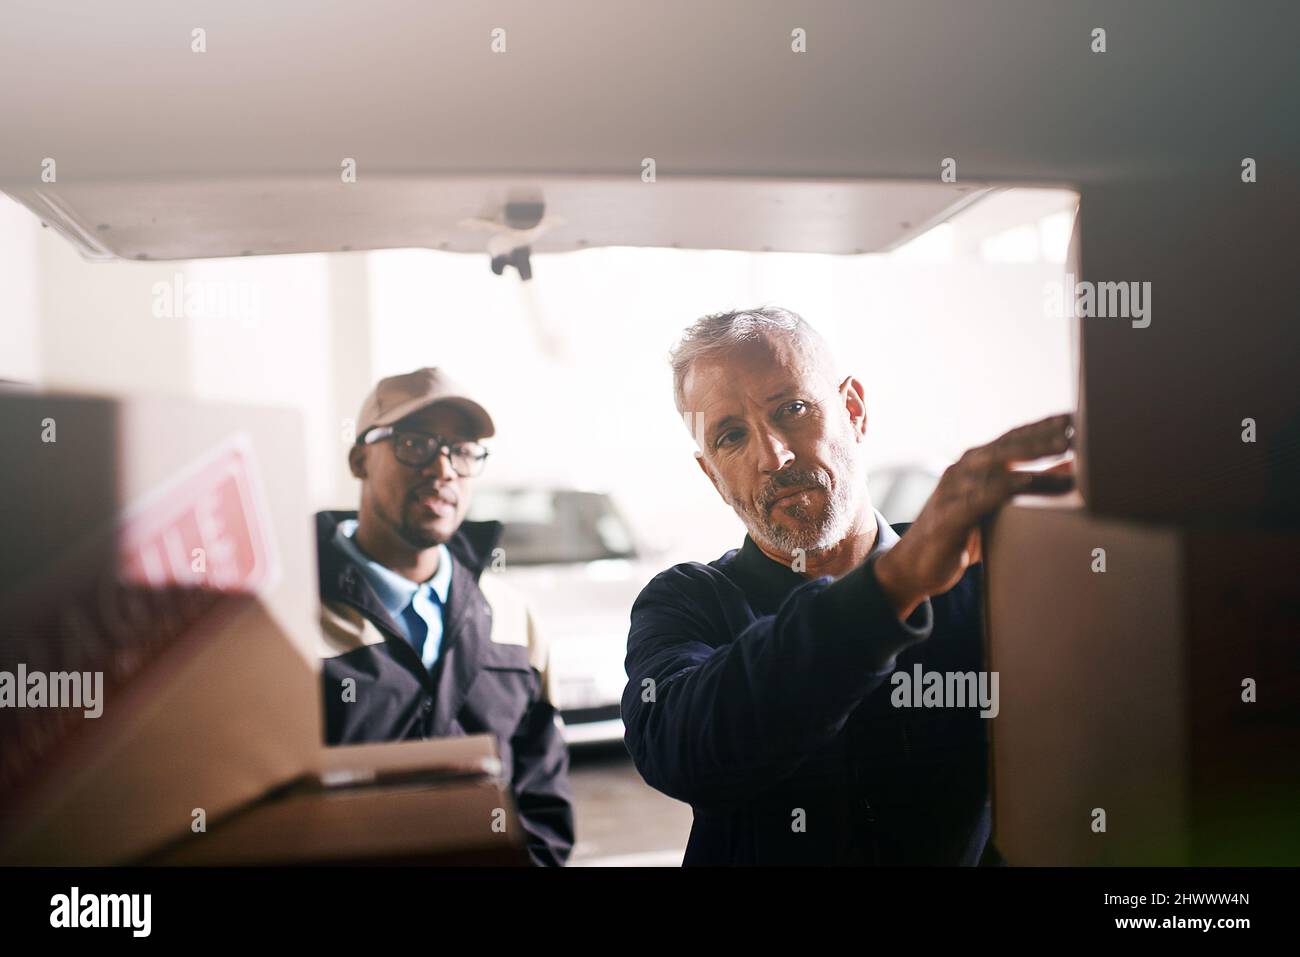 Caricare le merci con la massima cura. Shot di consegna uomini che caricano scatole in un veicolo. Foto Stock